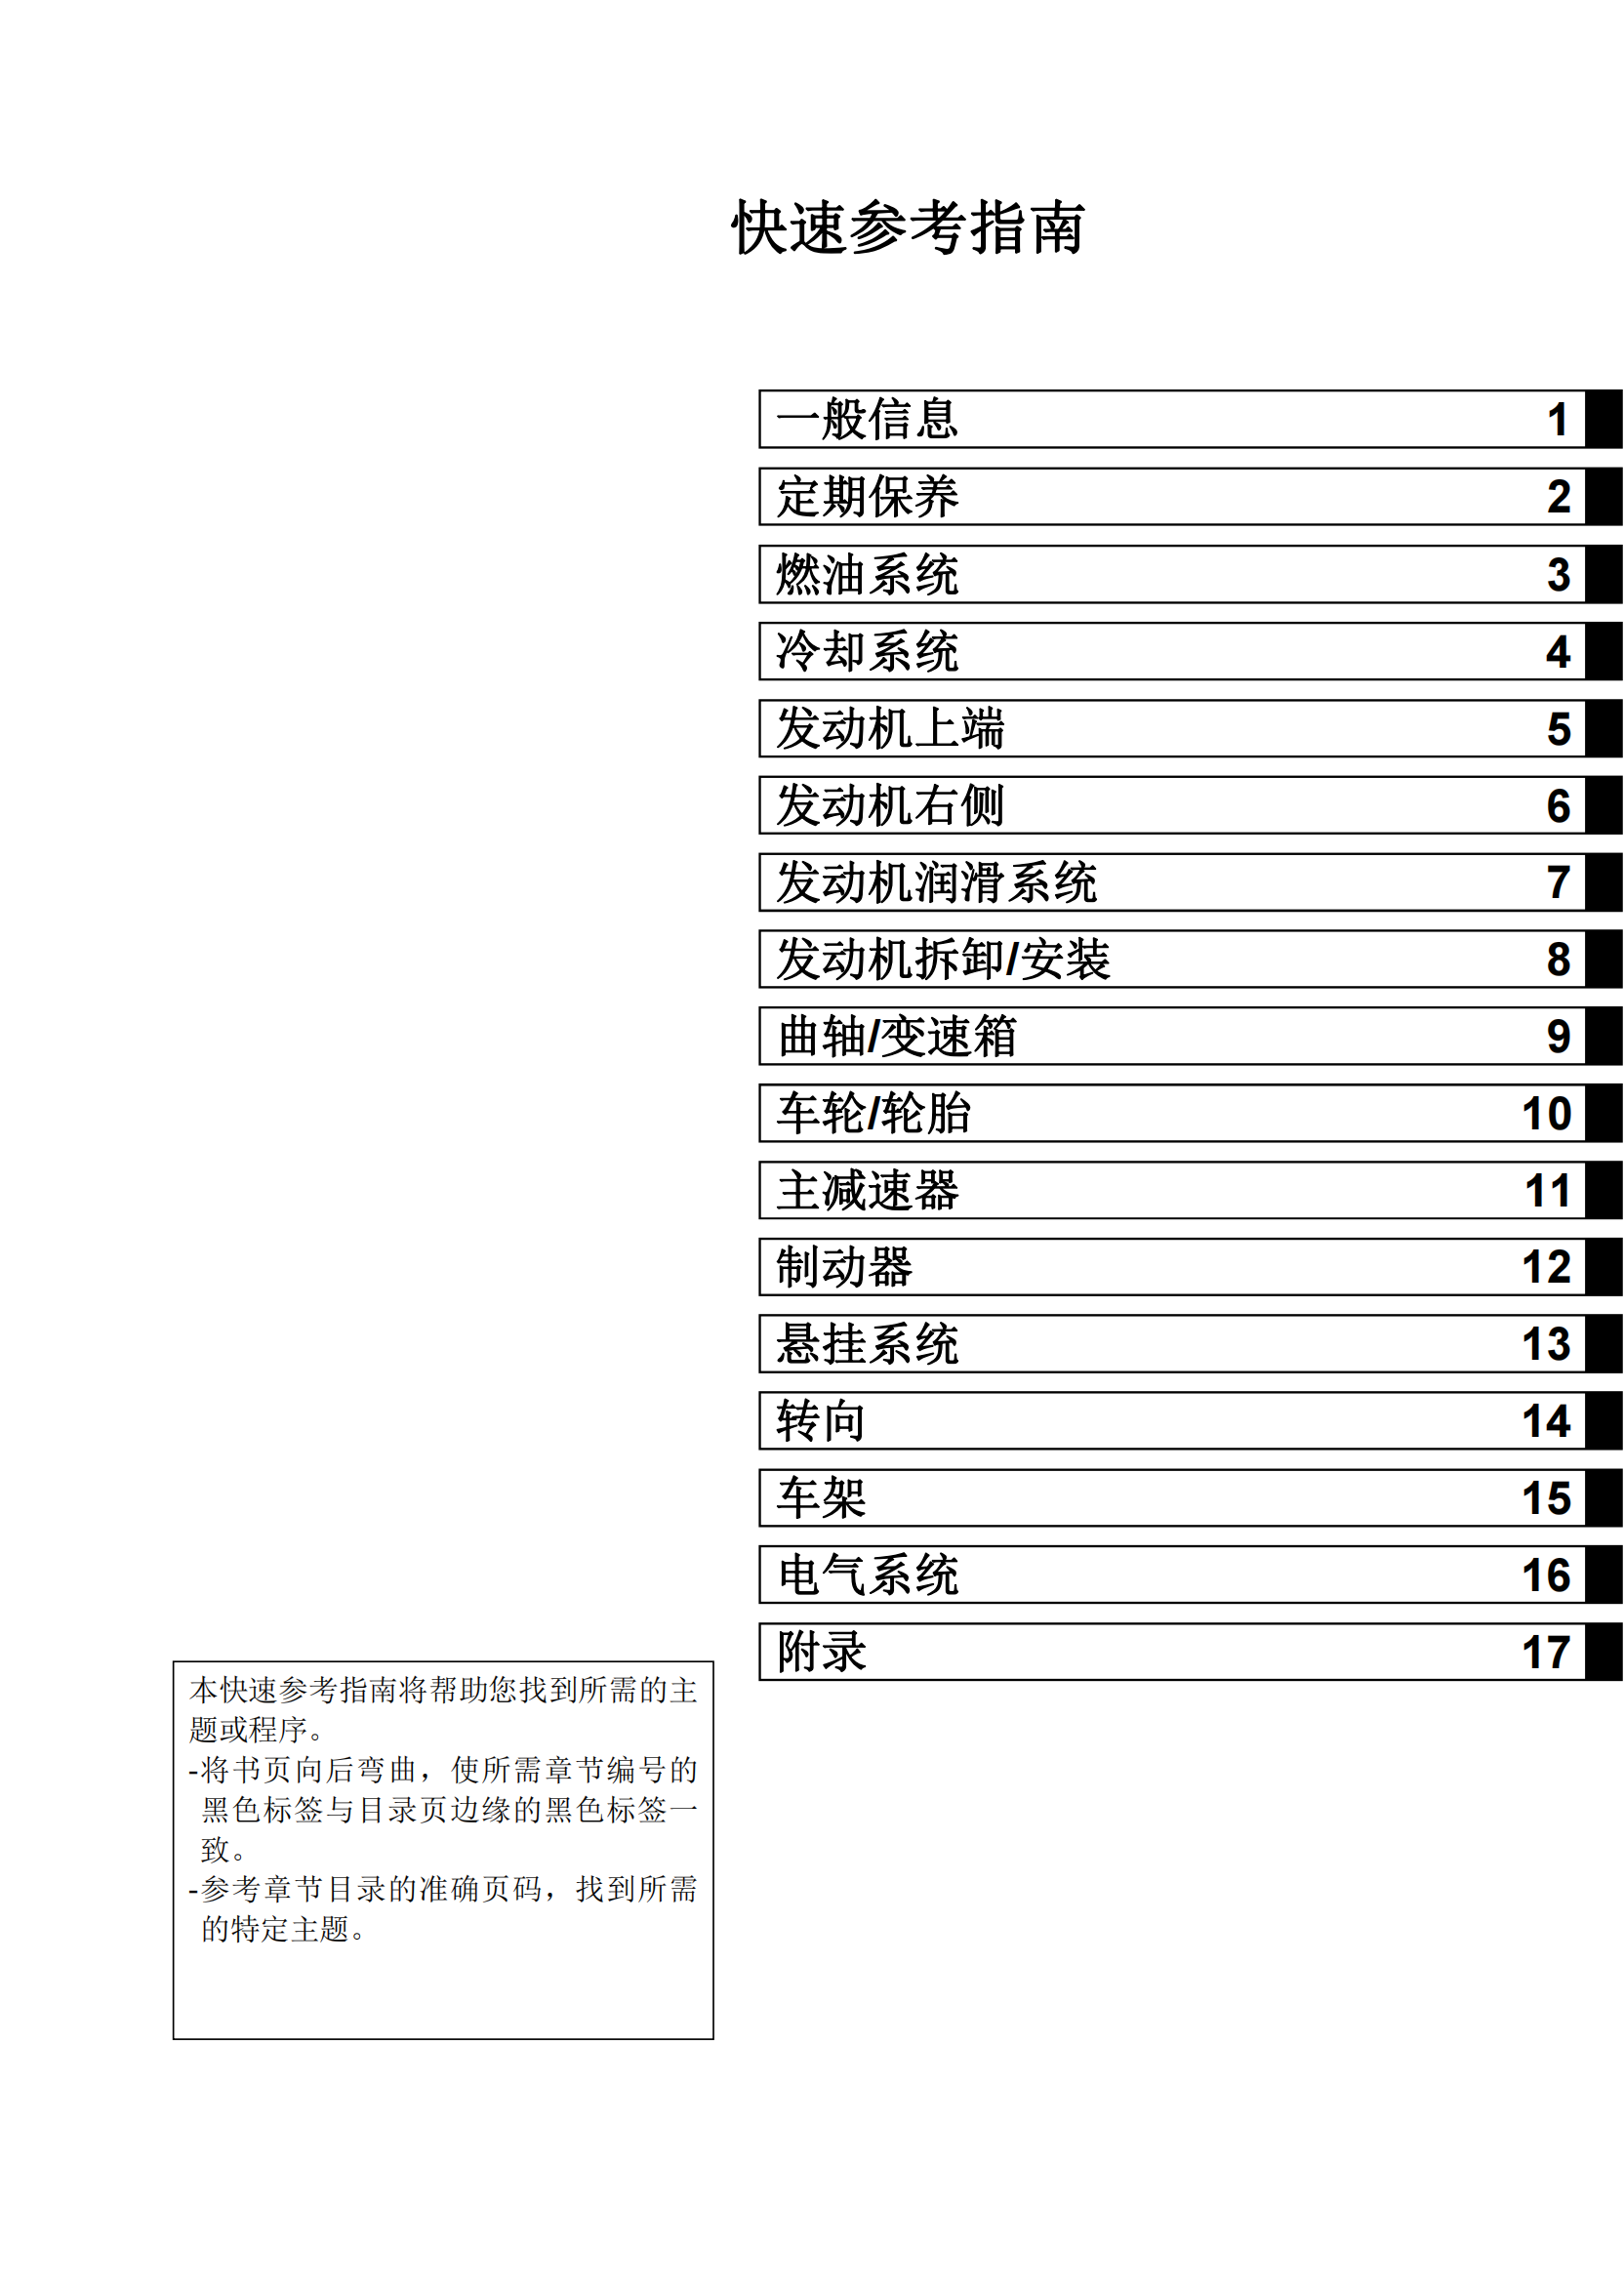 简体中文2006-2008年川崎kx250f维修手册 kawasaki kx250f维修手册插图1